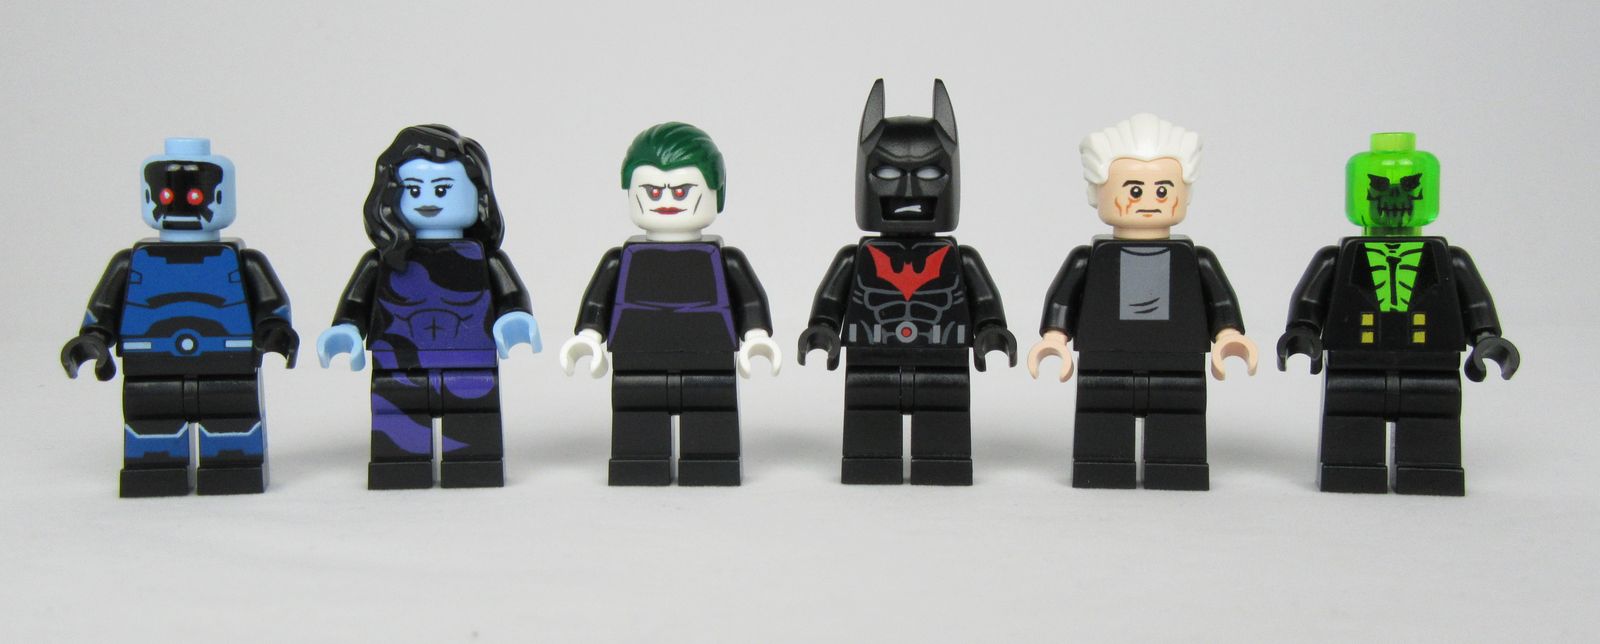 lego batman joker minifigure